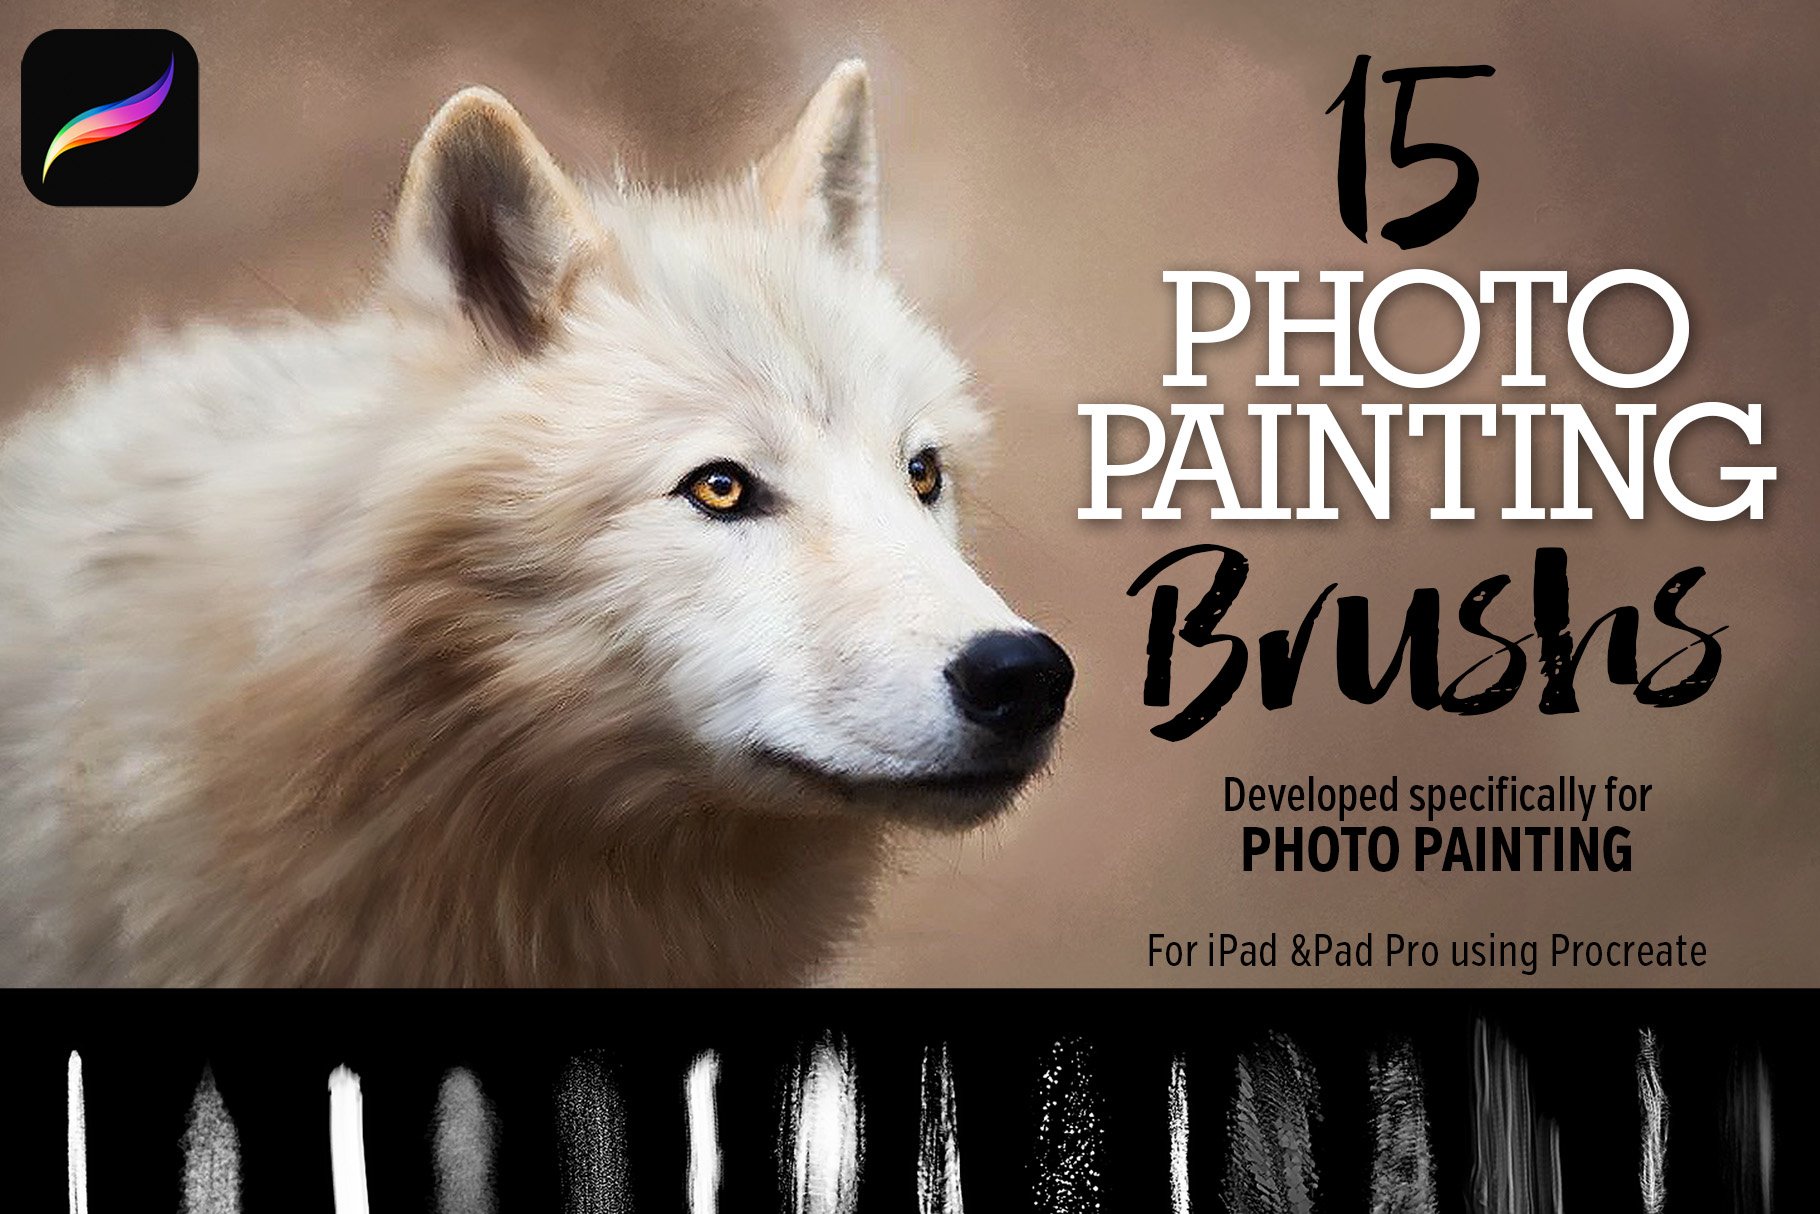 15_Photo_Painting_Brushes